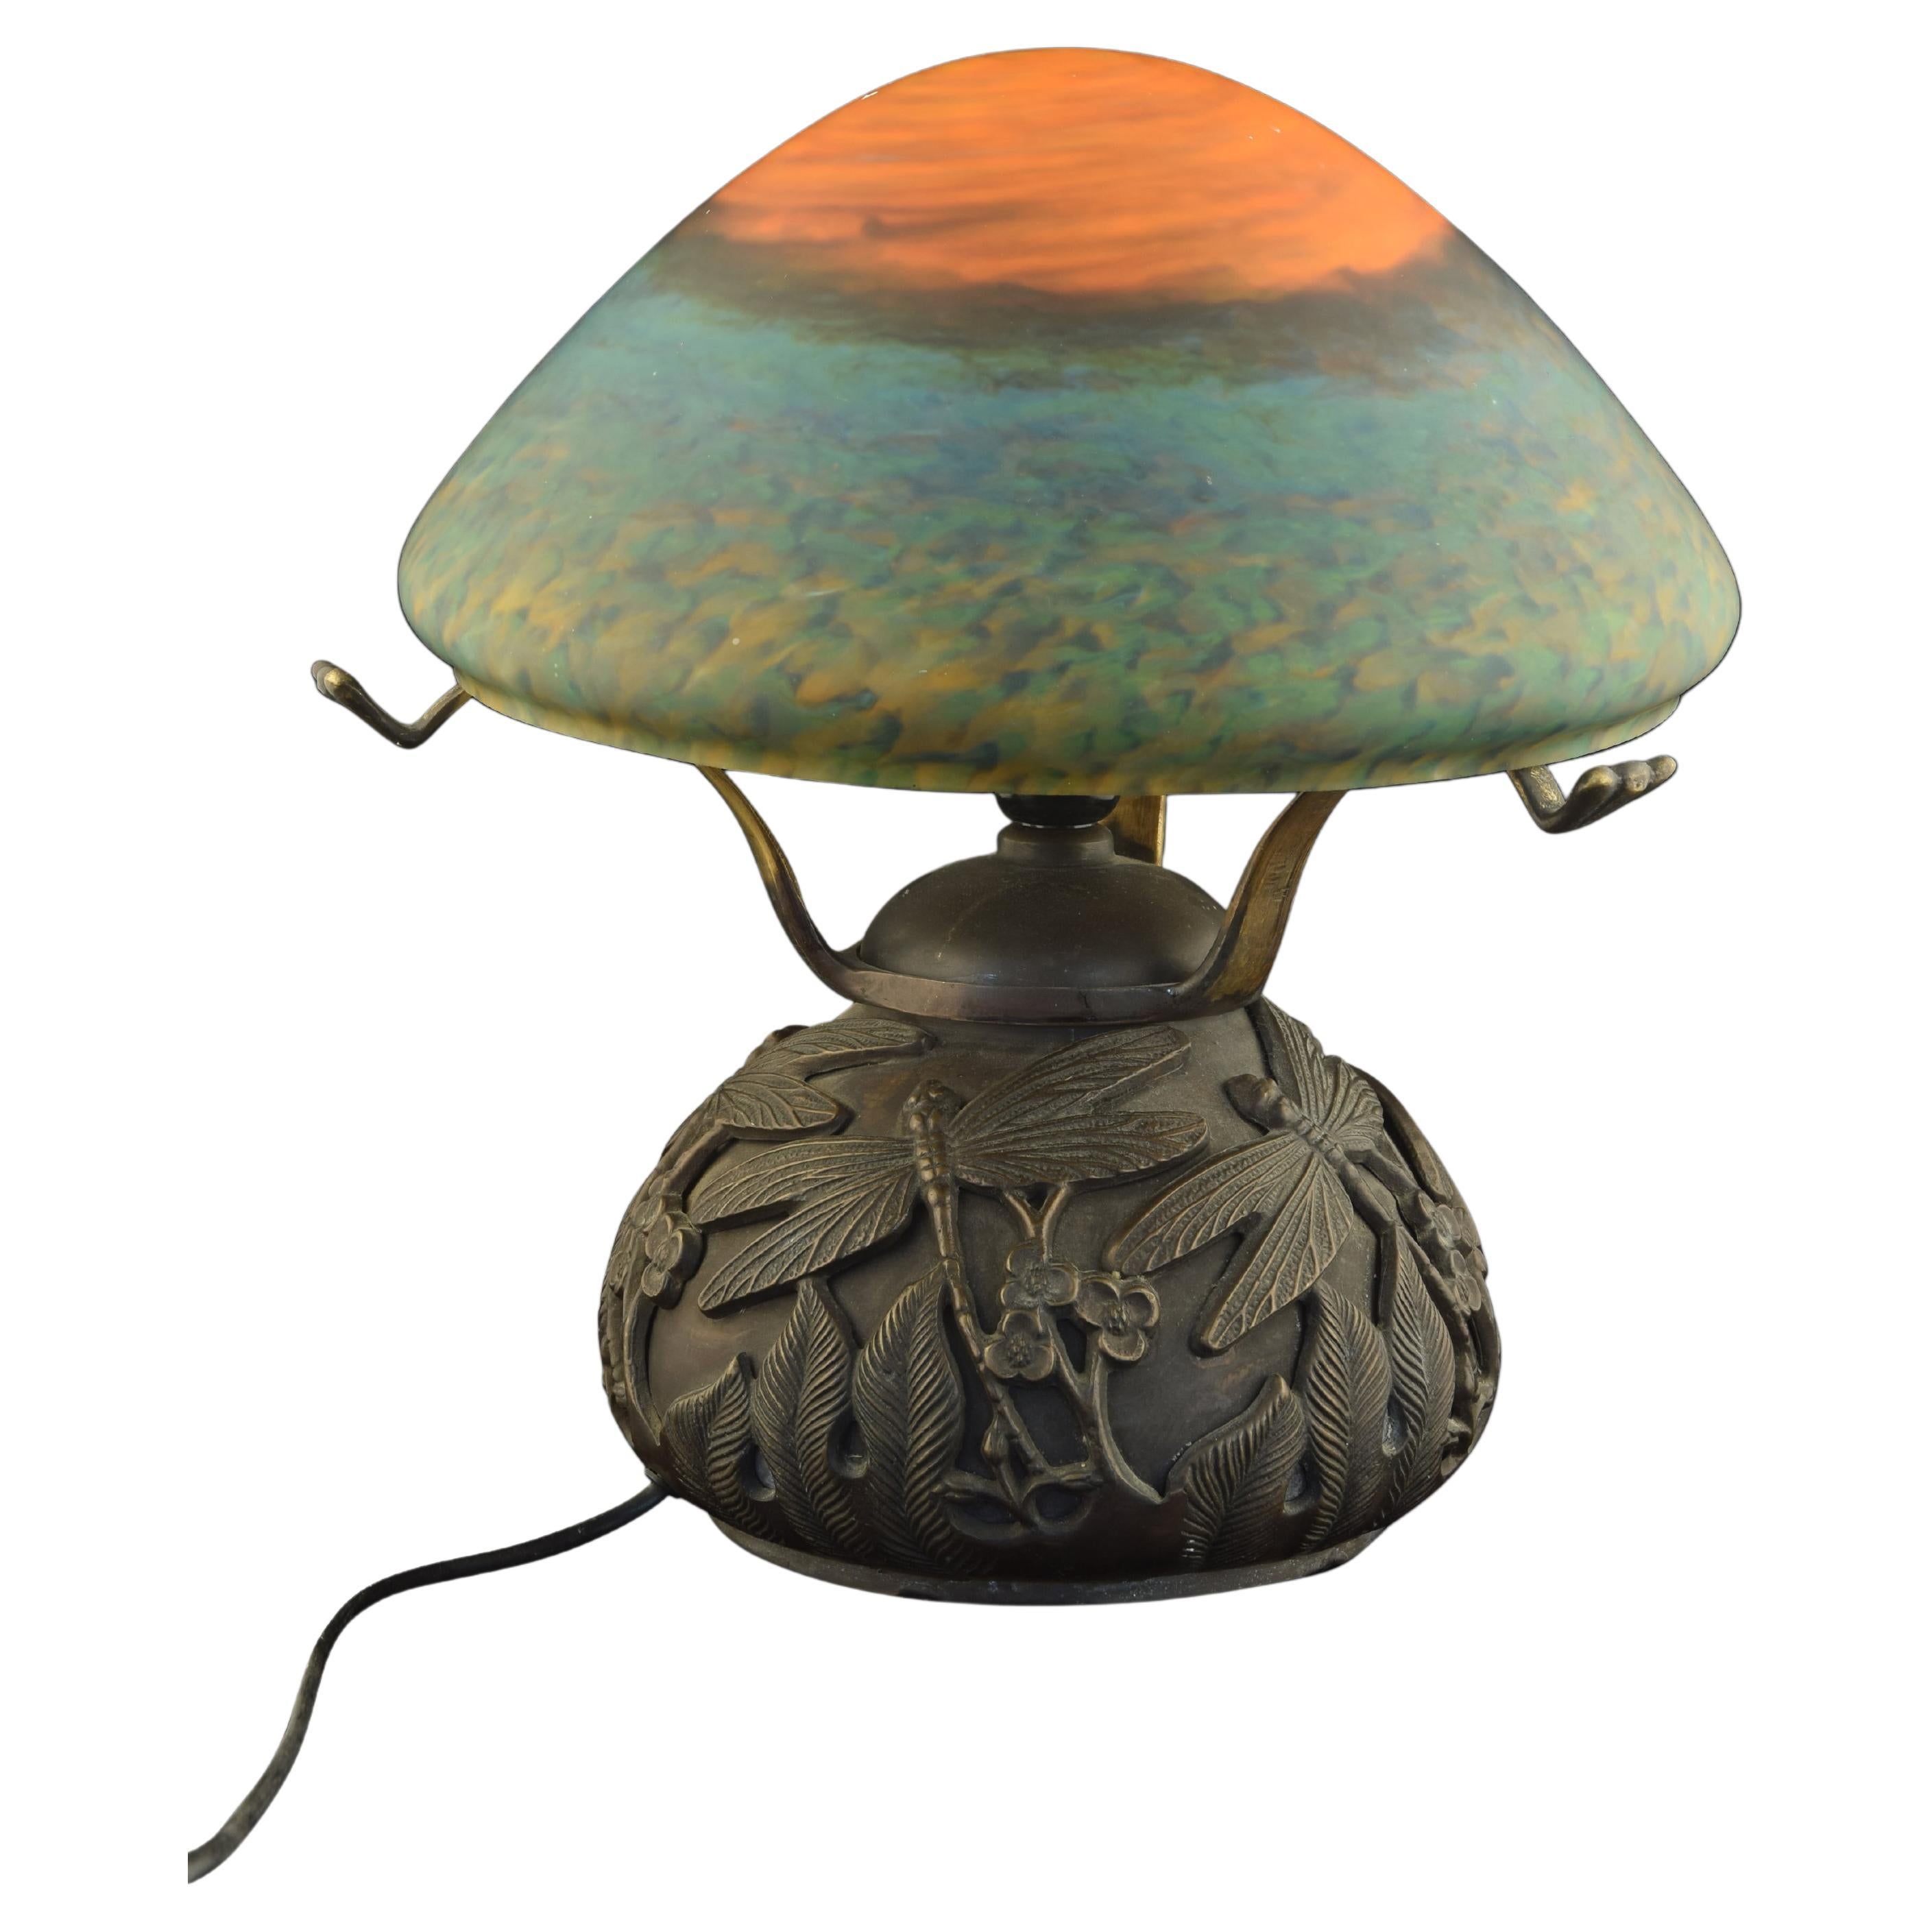 Lampe de table d'inspiration Art nouveau. Bronze, verre.